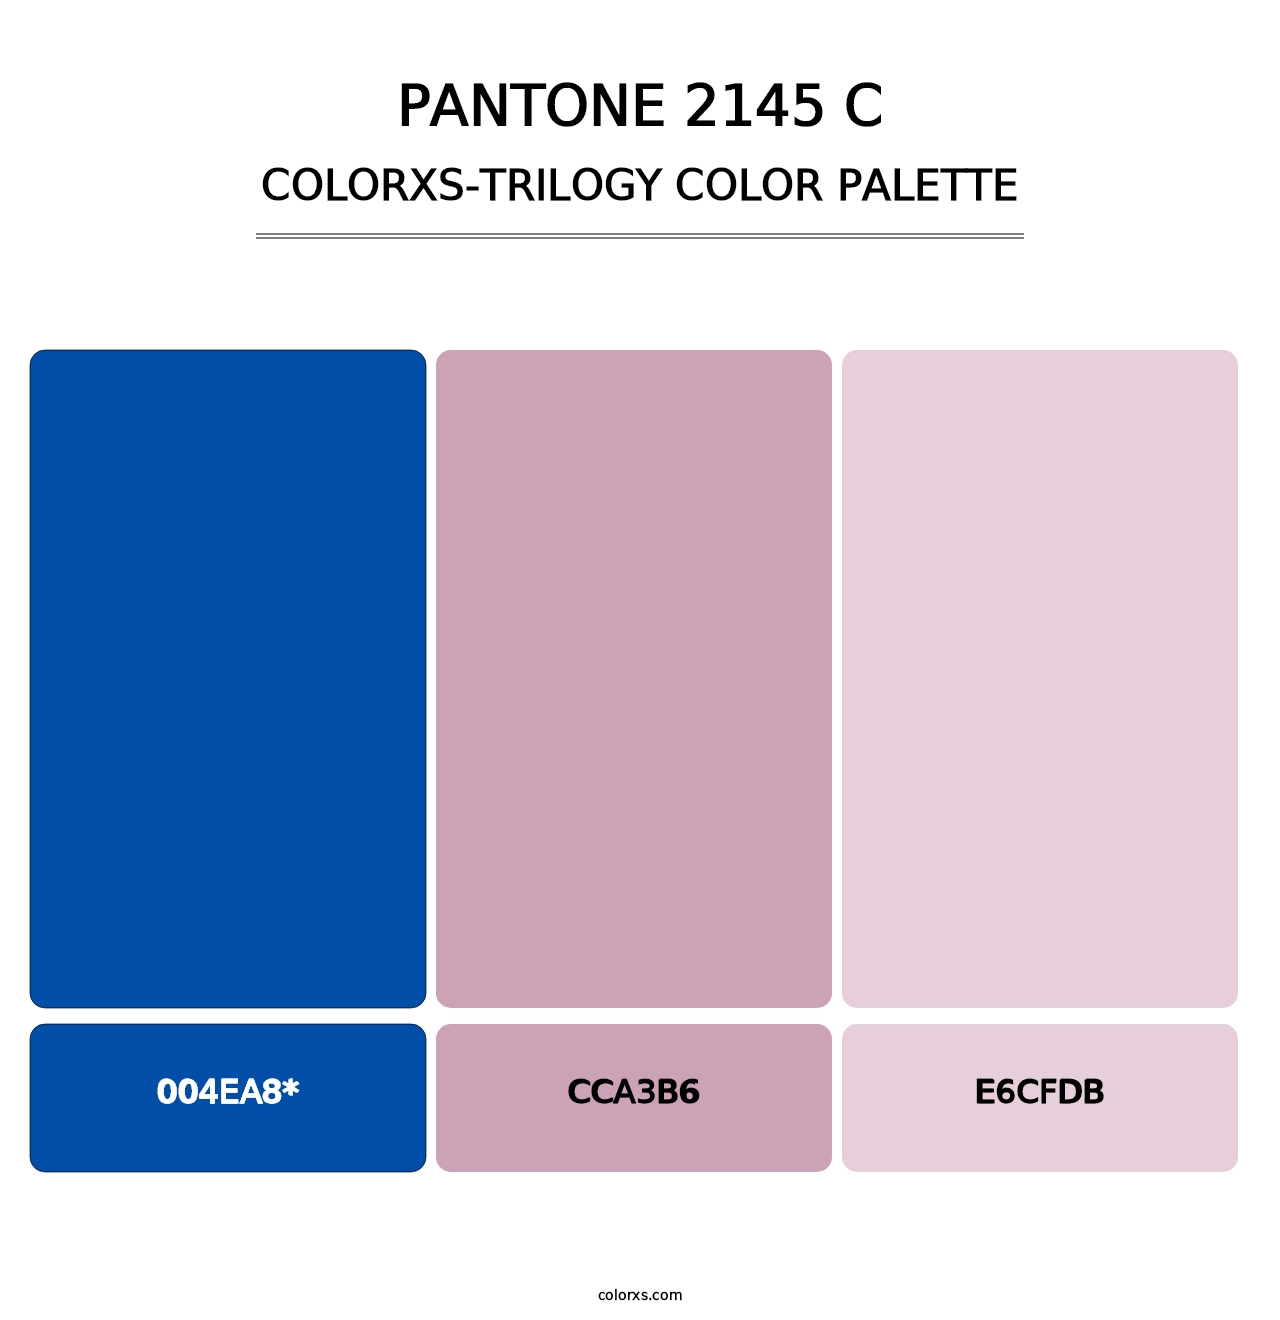 PANTONE 2145 C - Colorxs Trilogy Palette